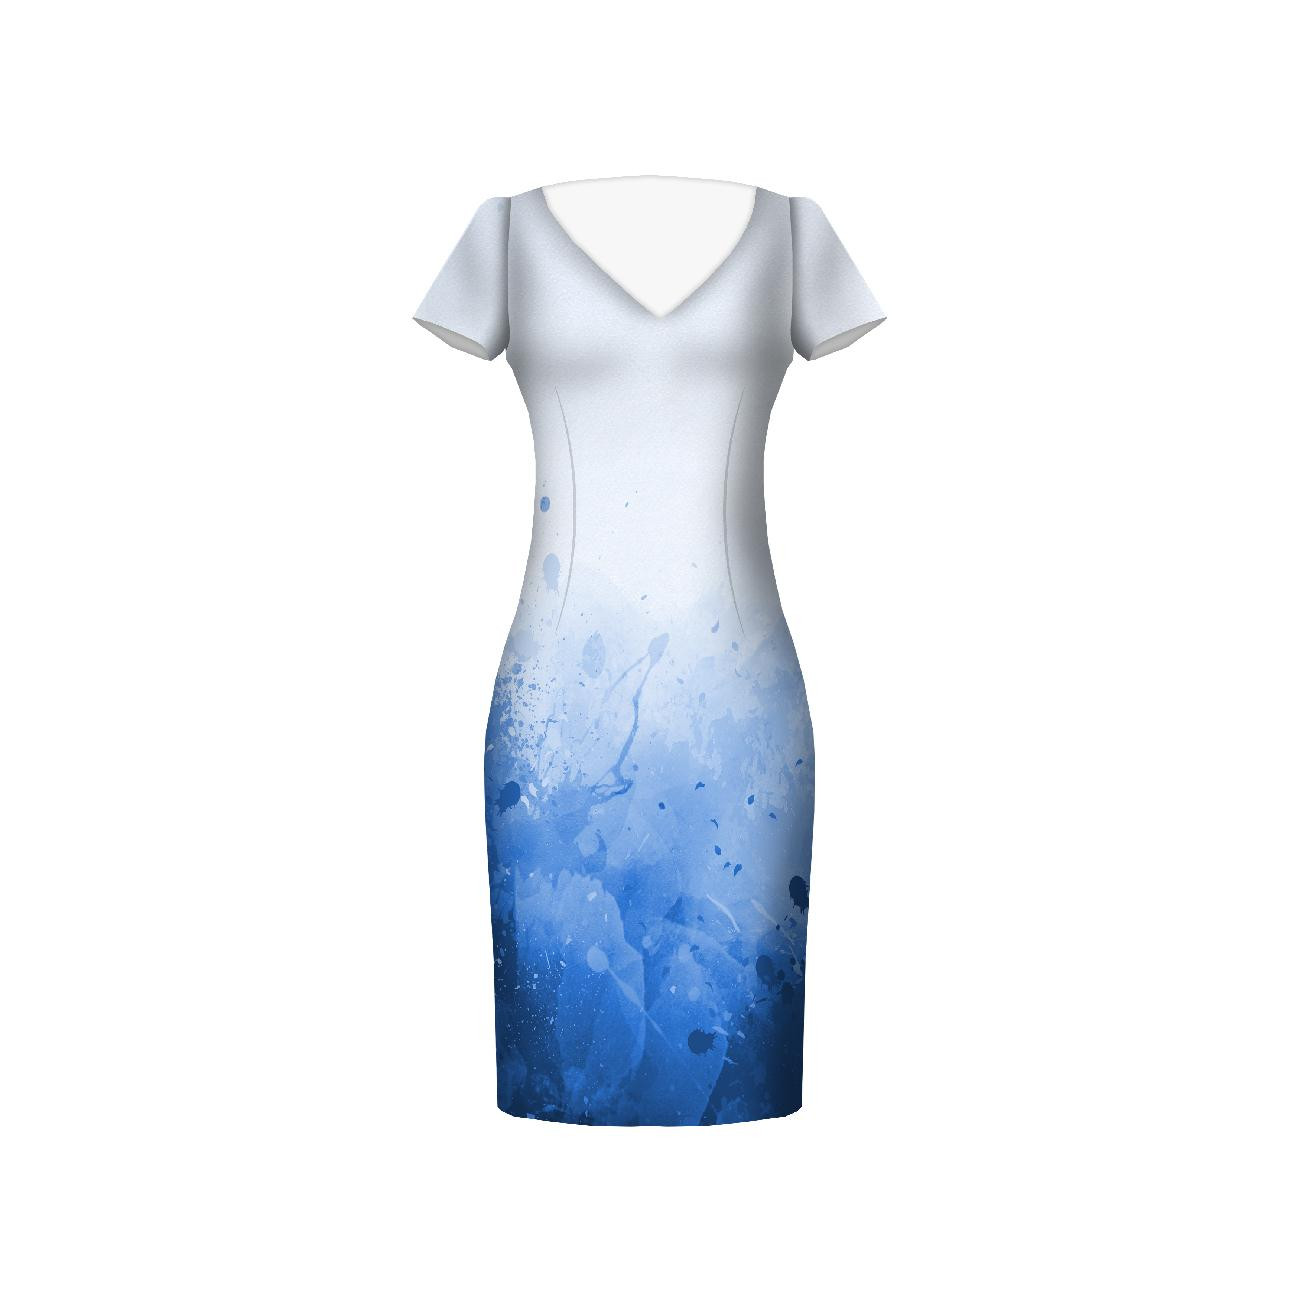 SPECKS (classic blue) - dress panel Linen 100%